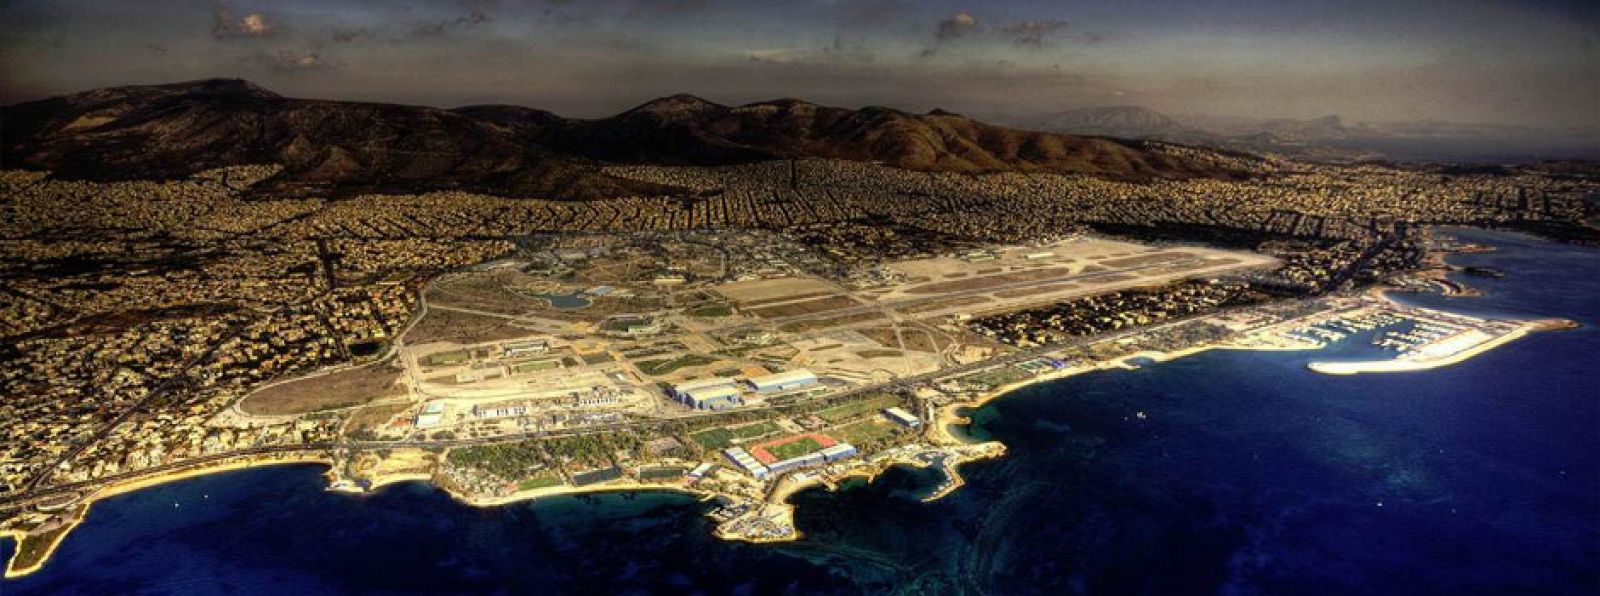 Vista aérea del antiguo aeropuerto Hellinikon de Atenas facilitada por el fondo estatal que gestiona su venta como terreno urbanizable.